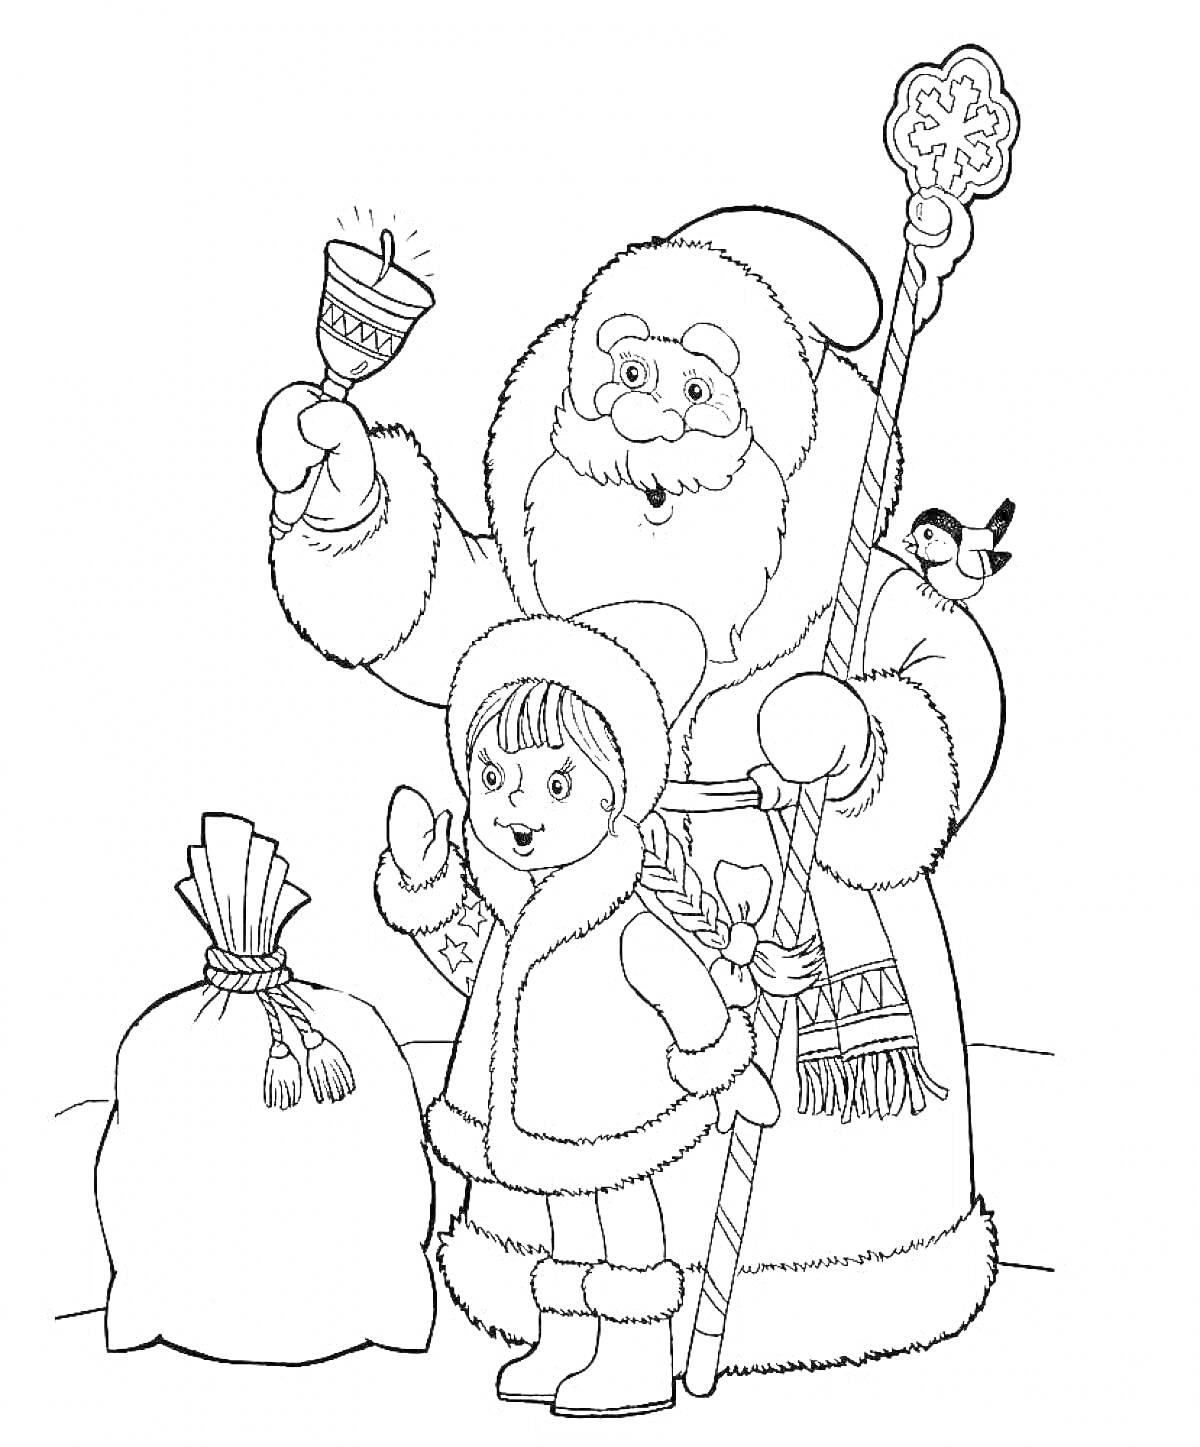 Раскраска Дед Мороз с посохом и колокольчиком, Снегурочка, мешок с подарками и снегирь